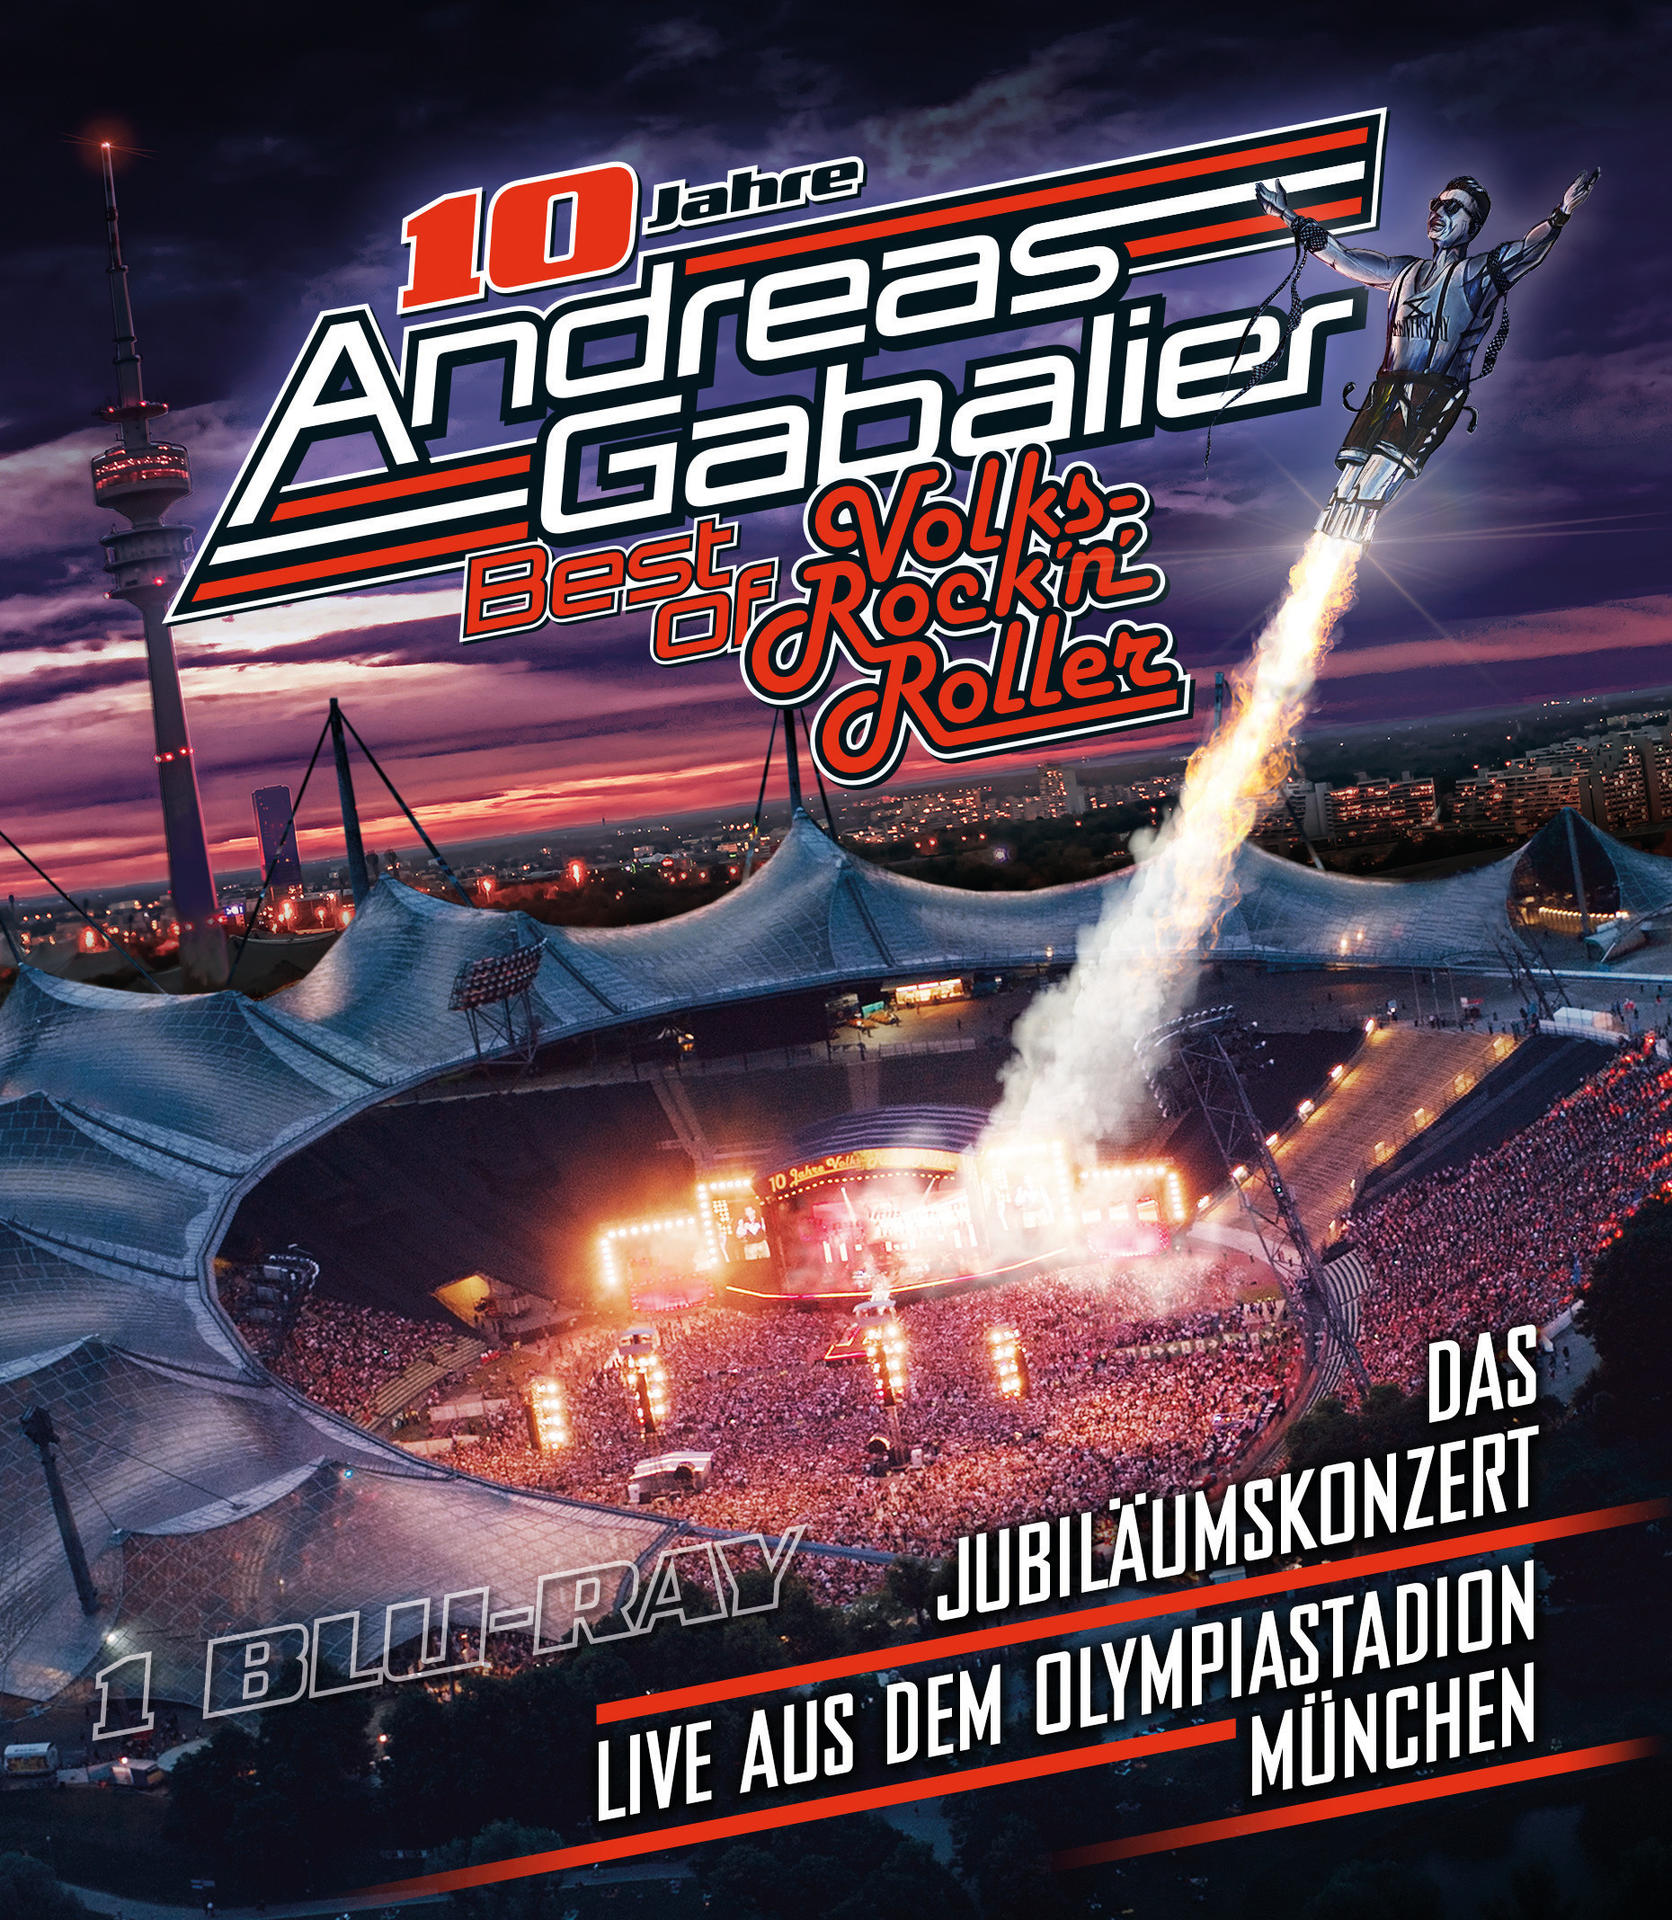 Andreas Gabalier – in aus - Jubiläumskonzert dem (Blu-ray) - Volks-Rock’n’Roller live of Best Olympiastadion Das München